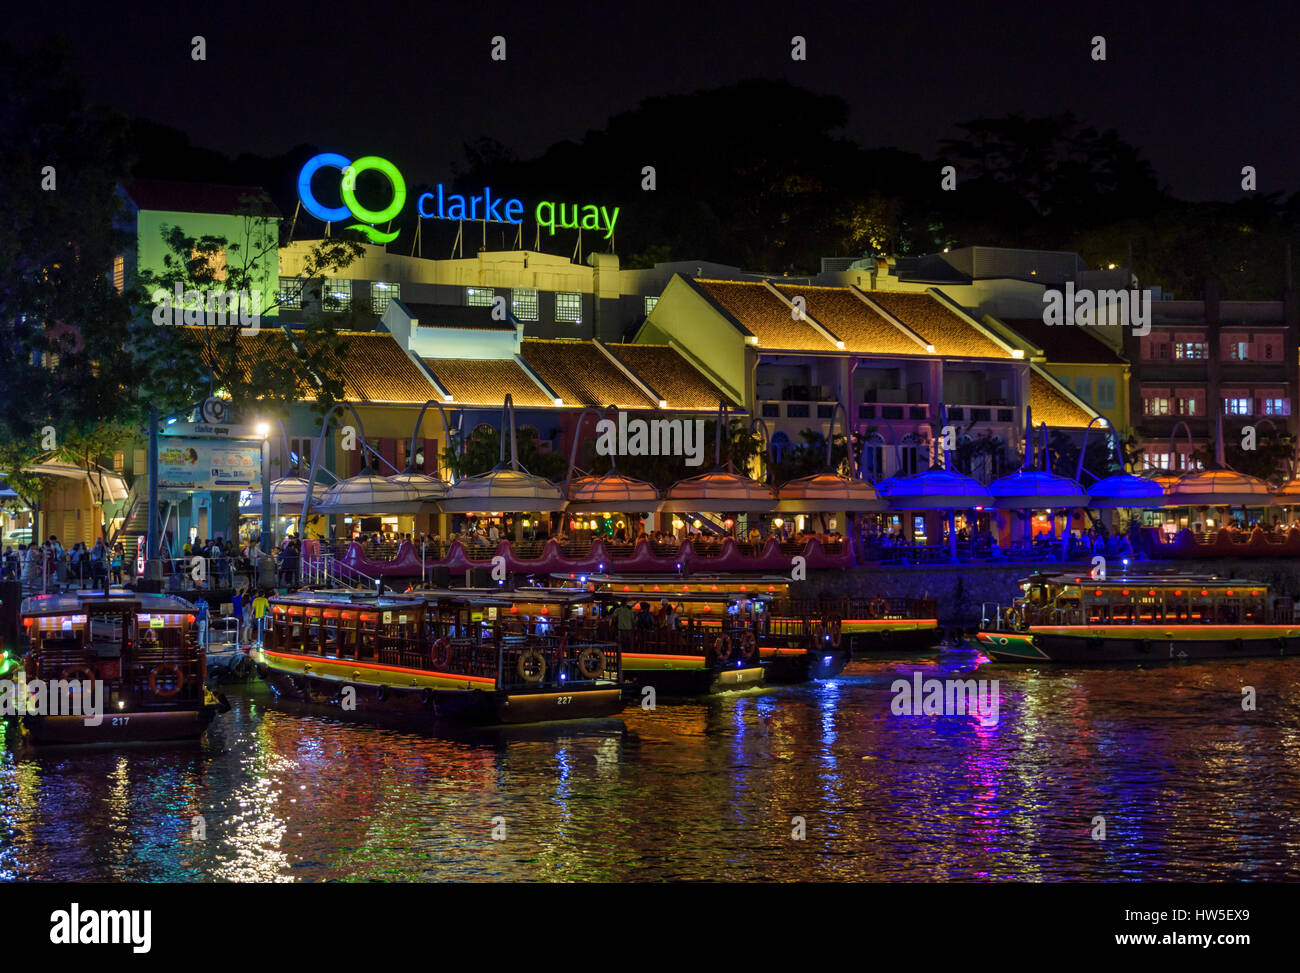 Clarke Quay recinto al aire libre por la noche de concurridos cafés y restaurantes a lo largo de la orilla del río, Clarke Quay, Singapur Foto de stock